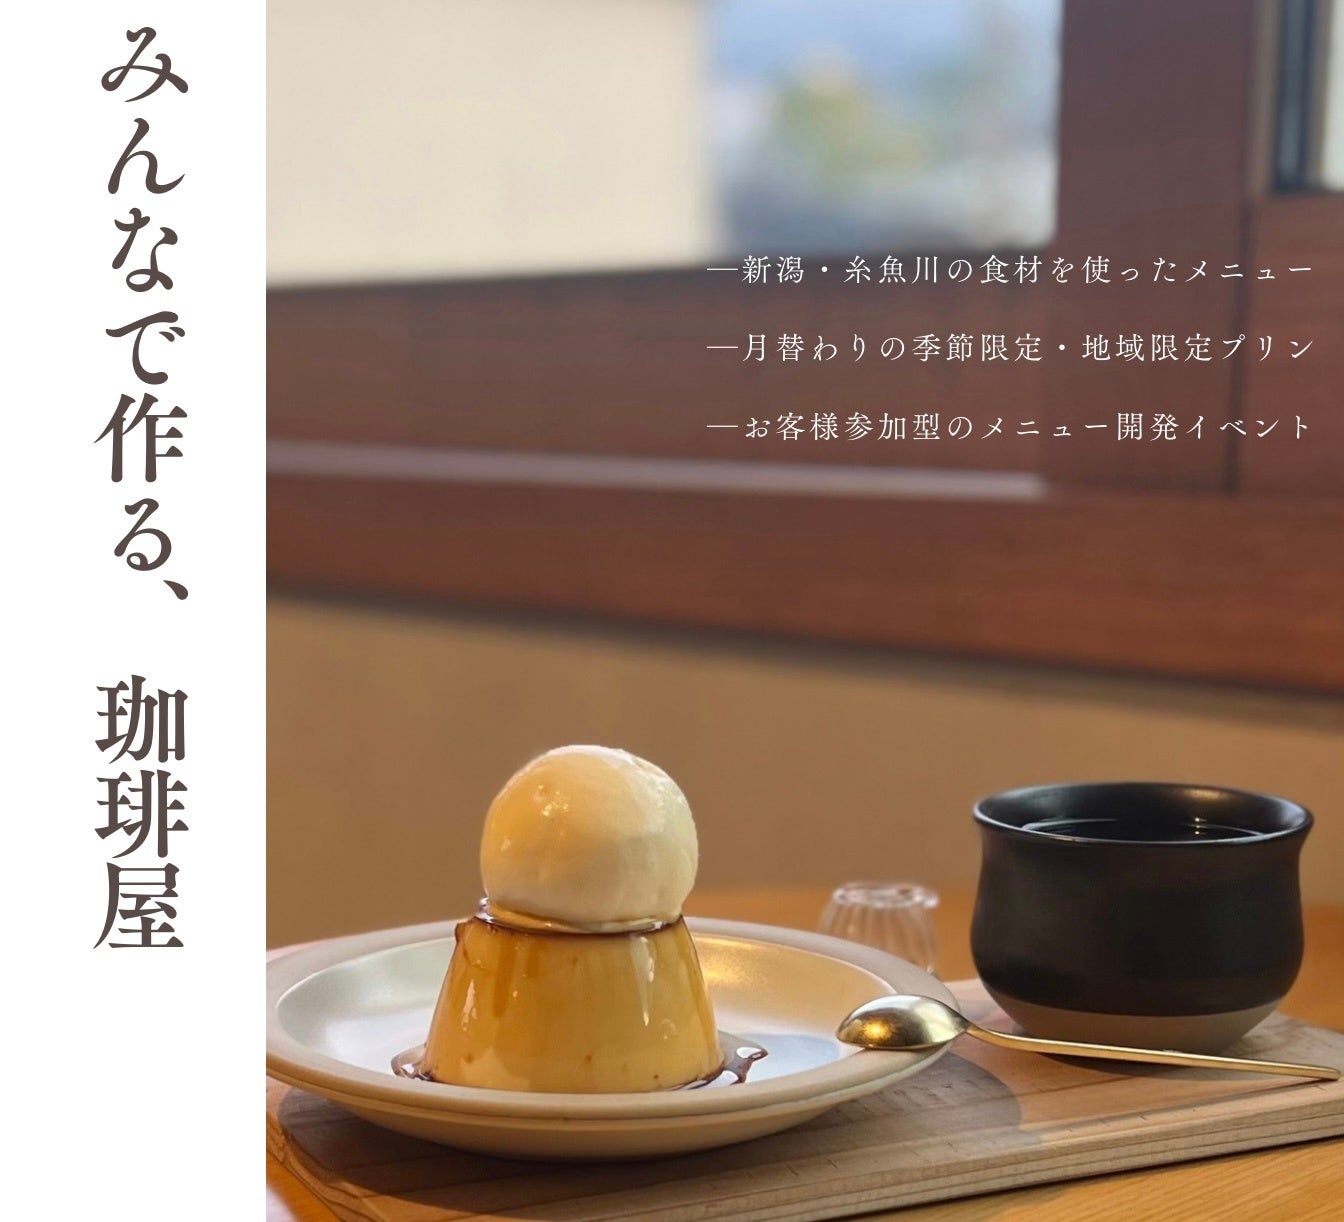 【地域の食材で、地域の人々と】新潟・糸魚川の食材を使ったメニューを提供する "みんなで作る、珈琲屋"【COW...